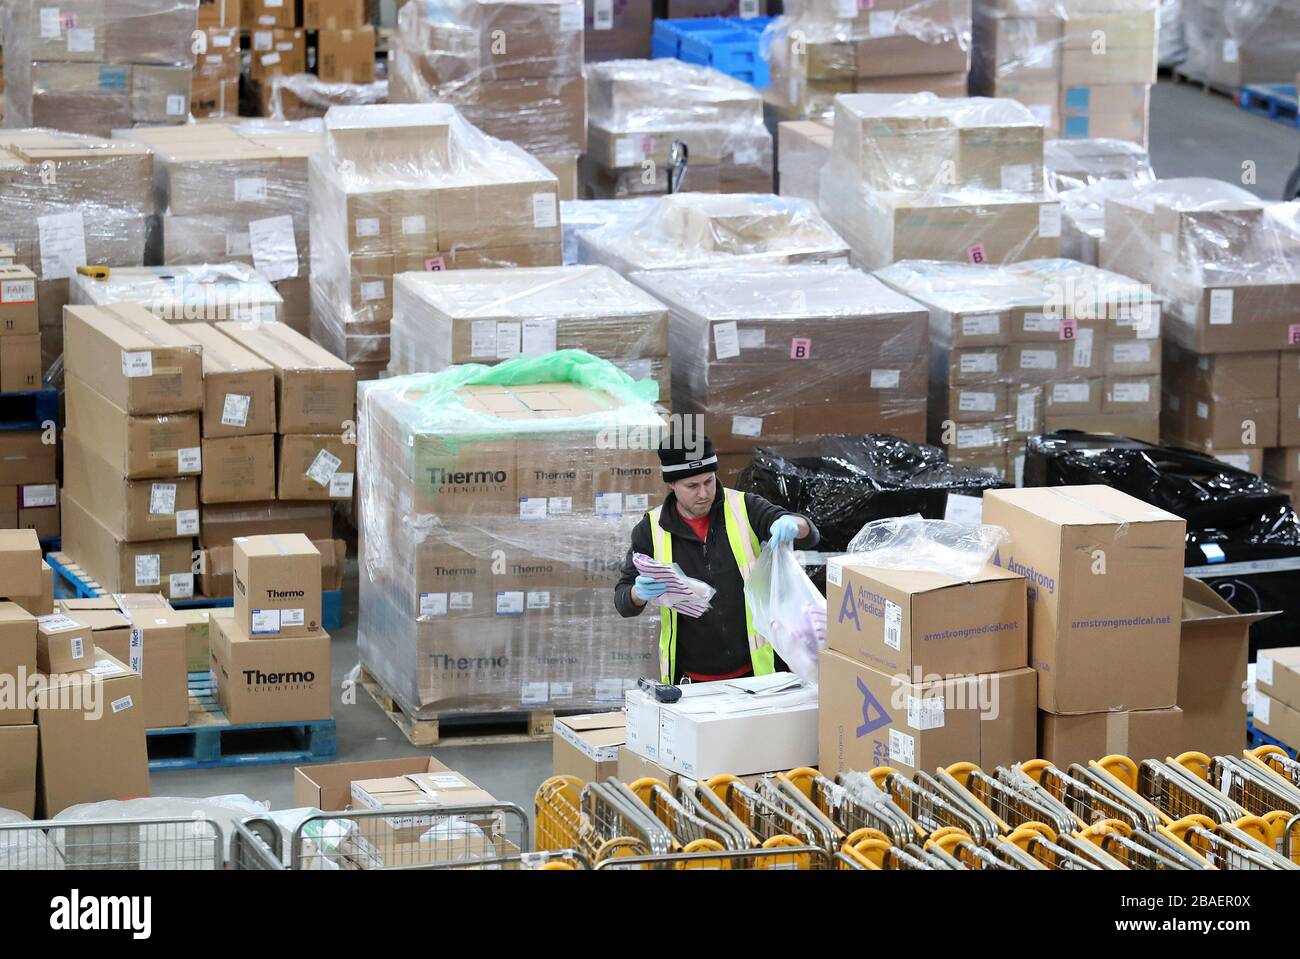 Un lavoratore raccoglie le forniture presso il National Procurement Warehouse di Canderside, Larkhall, mentre le consegne di dispositivi di protezione individuale (PPE) sono in aumento, con milioni di maschere e guanti già consegnati al personale di prima linea. Foto Stock